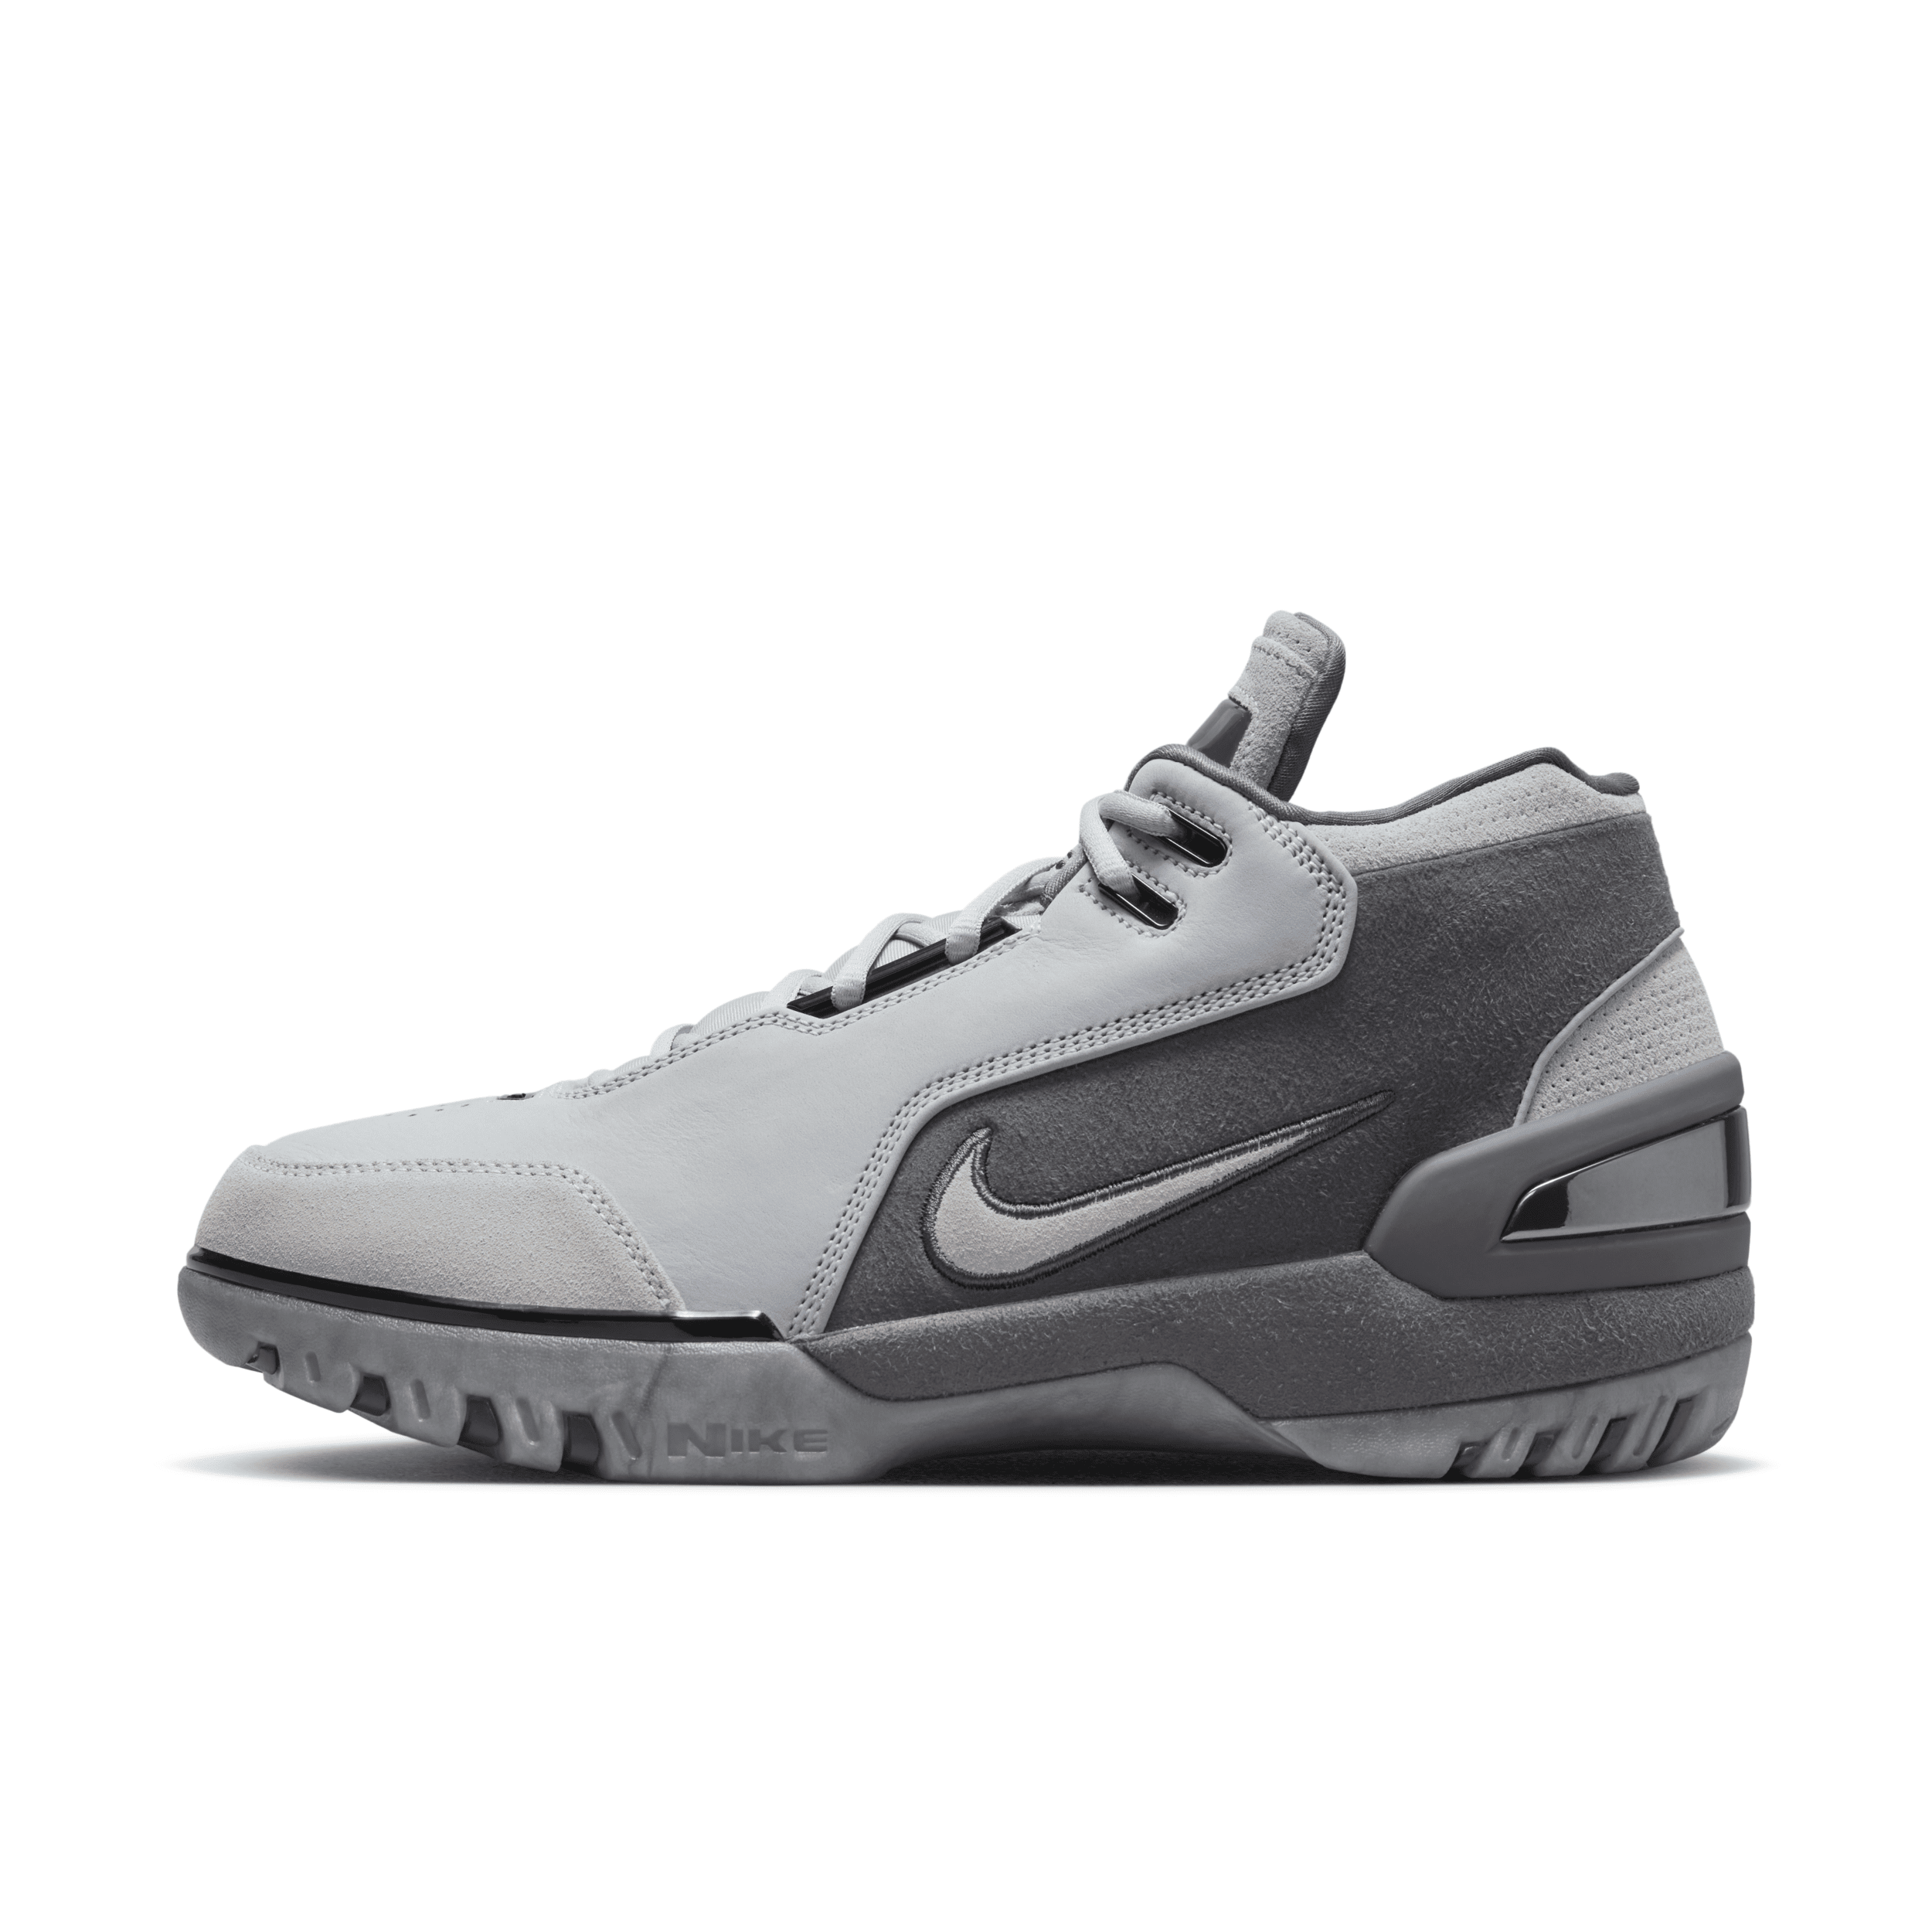 Nike Air Zoom Generation "dark Grey" Sneakers